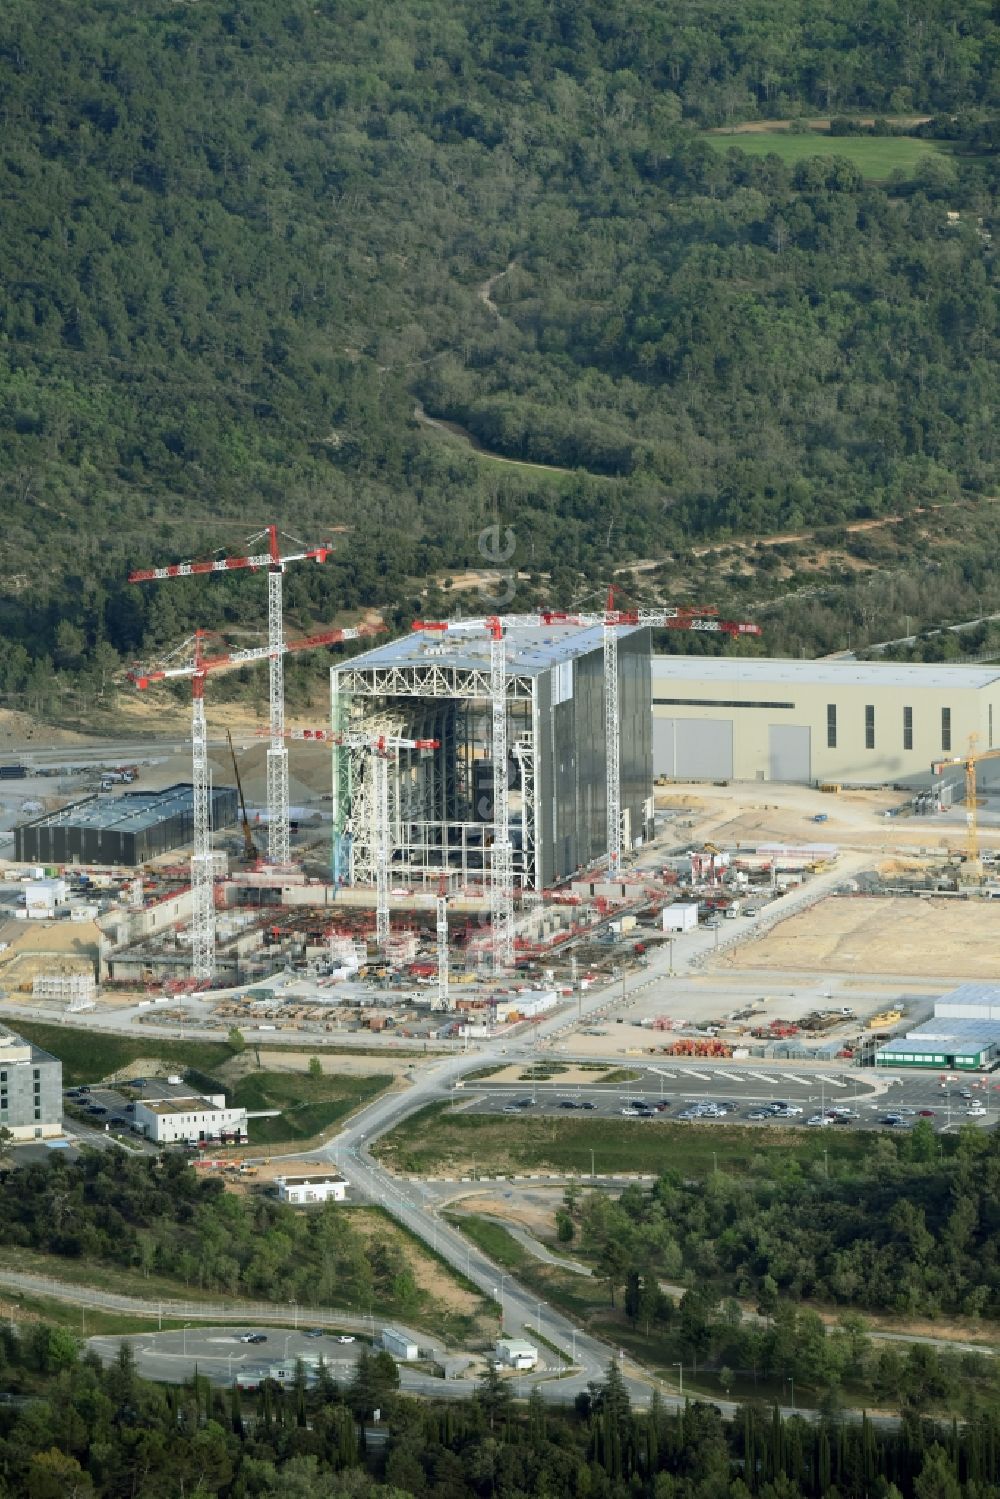 Luftbild Saint-Paul-lez-Durance - Neubau- Baustelle Reaktorblöcke und Anlagen des CEA Cadarache Forschungsinstitutes mit AKW - KKW Kernkraftwerk in Saint-Paul-lez-Durance in Provence-Alpes-Cote d'Azur, Frankreich